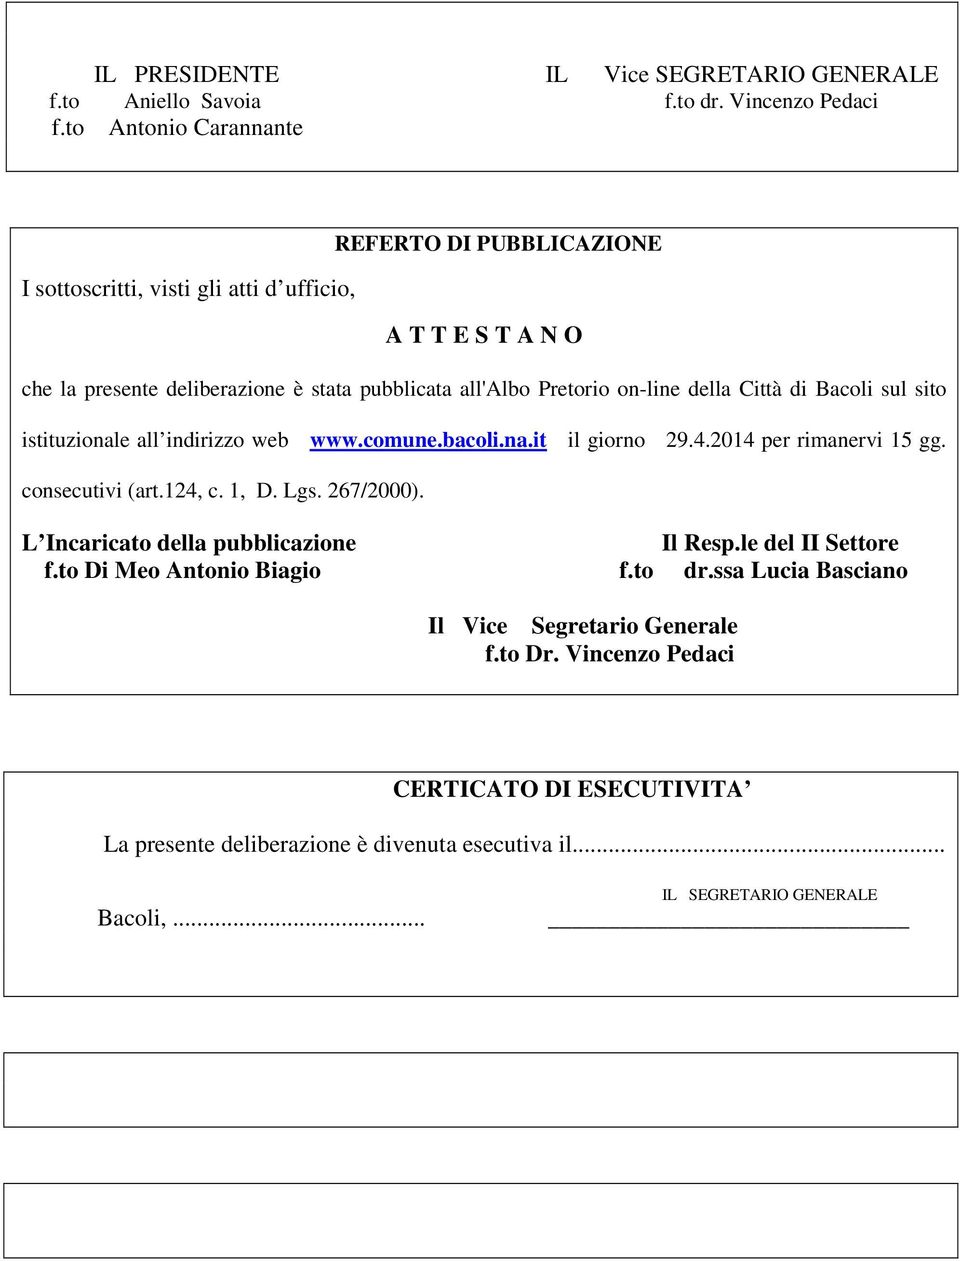 on-line della Città di Bacoli sul sito istituzionale all indirizzo web www.comune.bacoli.na.it il giorno 29.4.2014 per rimanervi 15 gg. consecutivi (art.124, c. 1, D. Lgs.